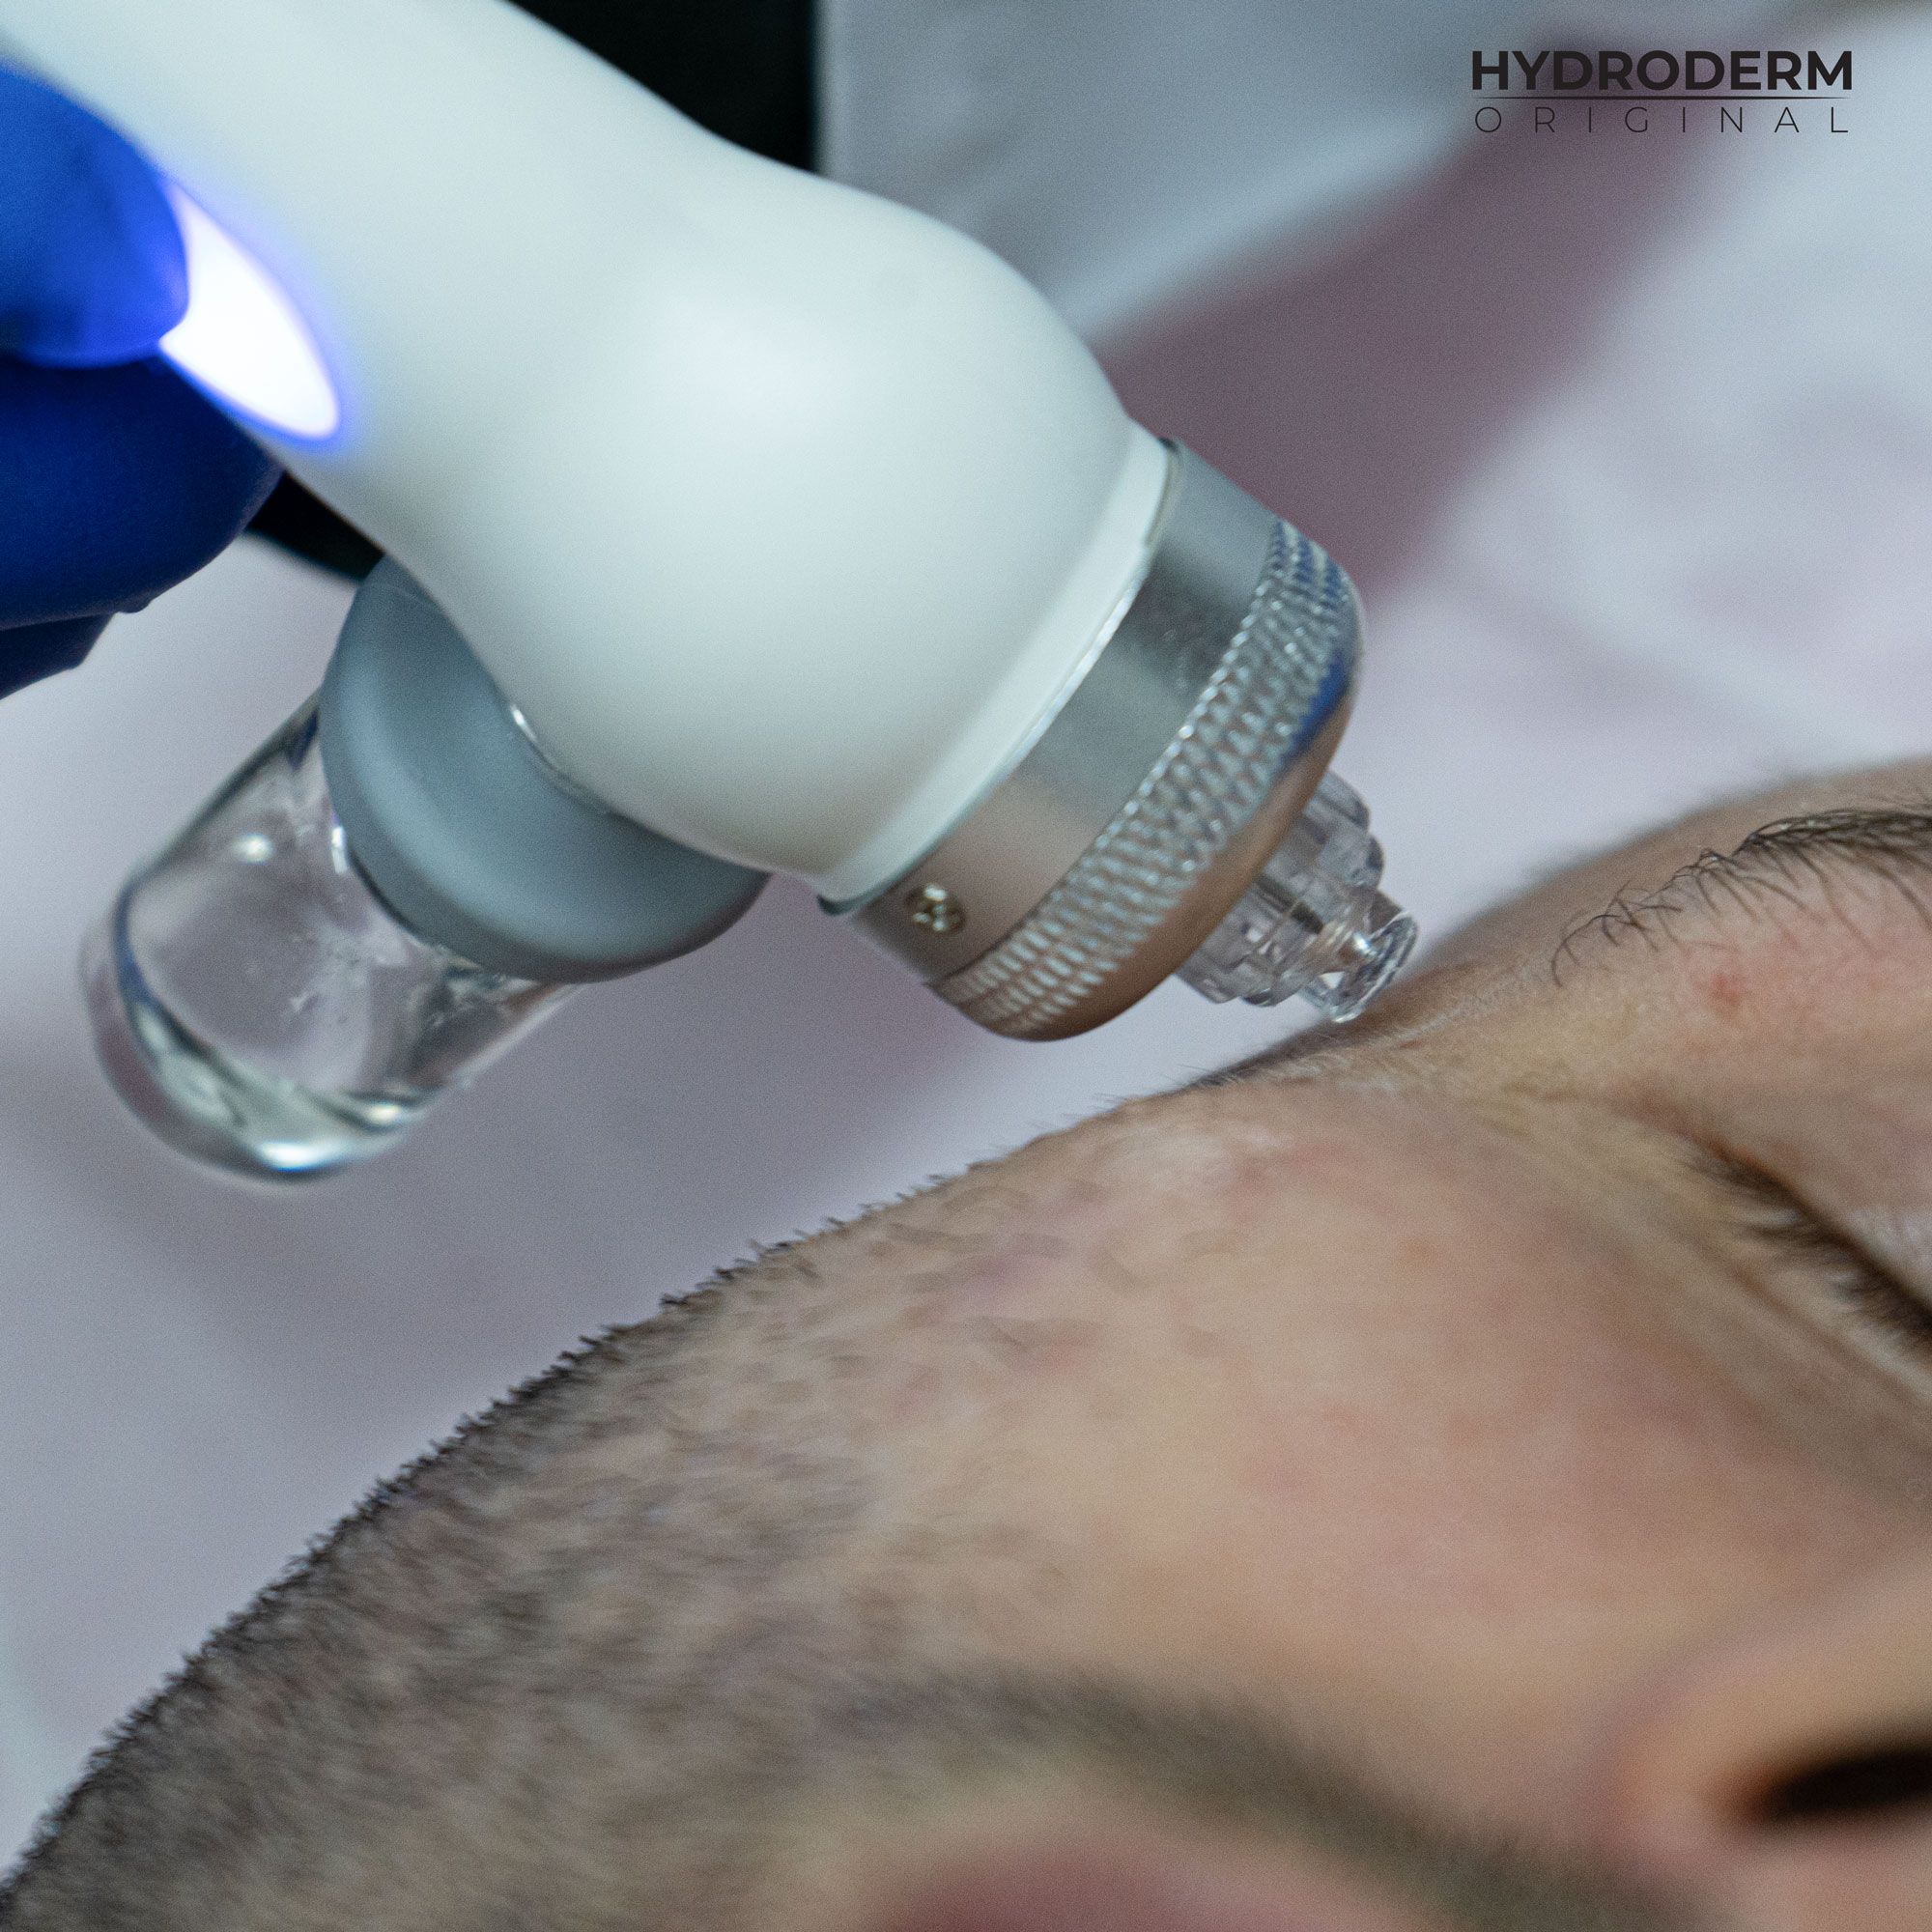 Składniki aktywne są wprowadzane w głąb skóry przy użyciu głowicy Oxygen Spray